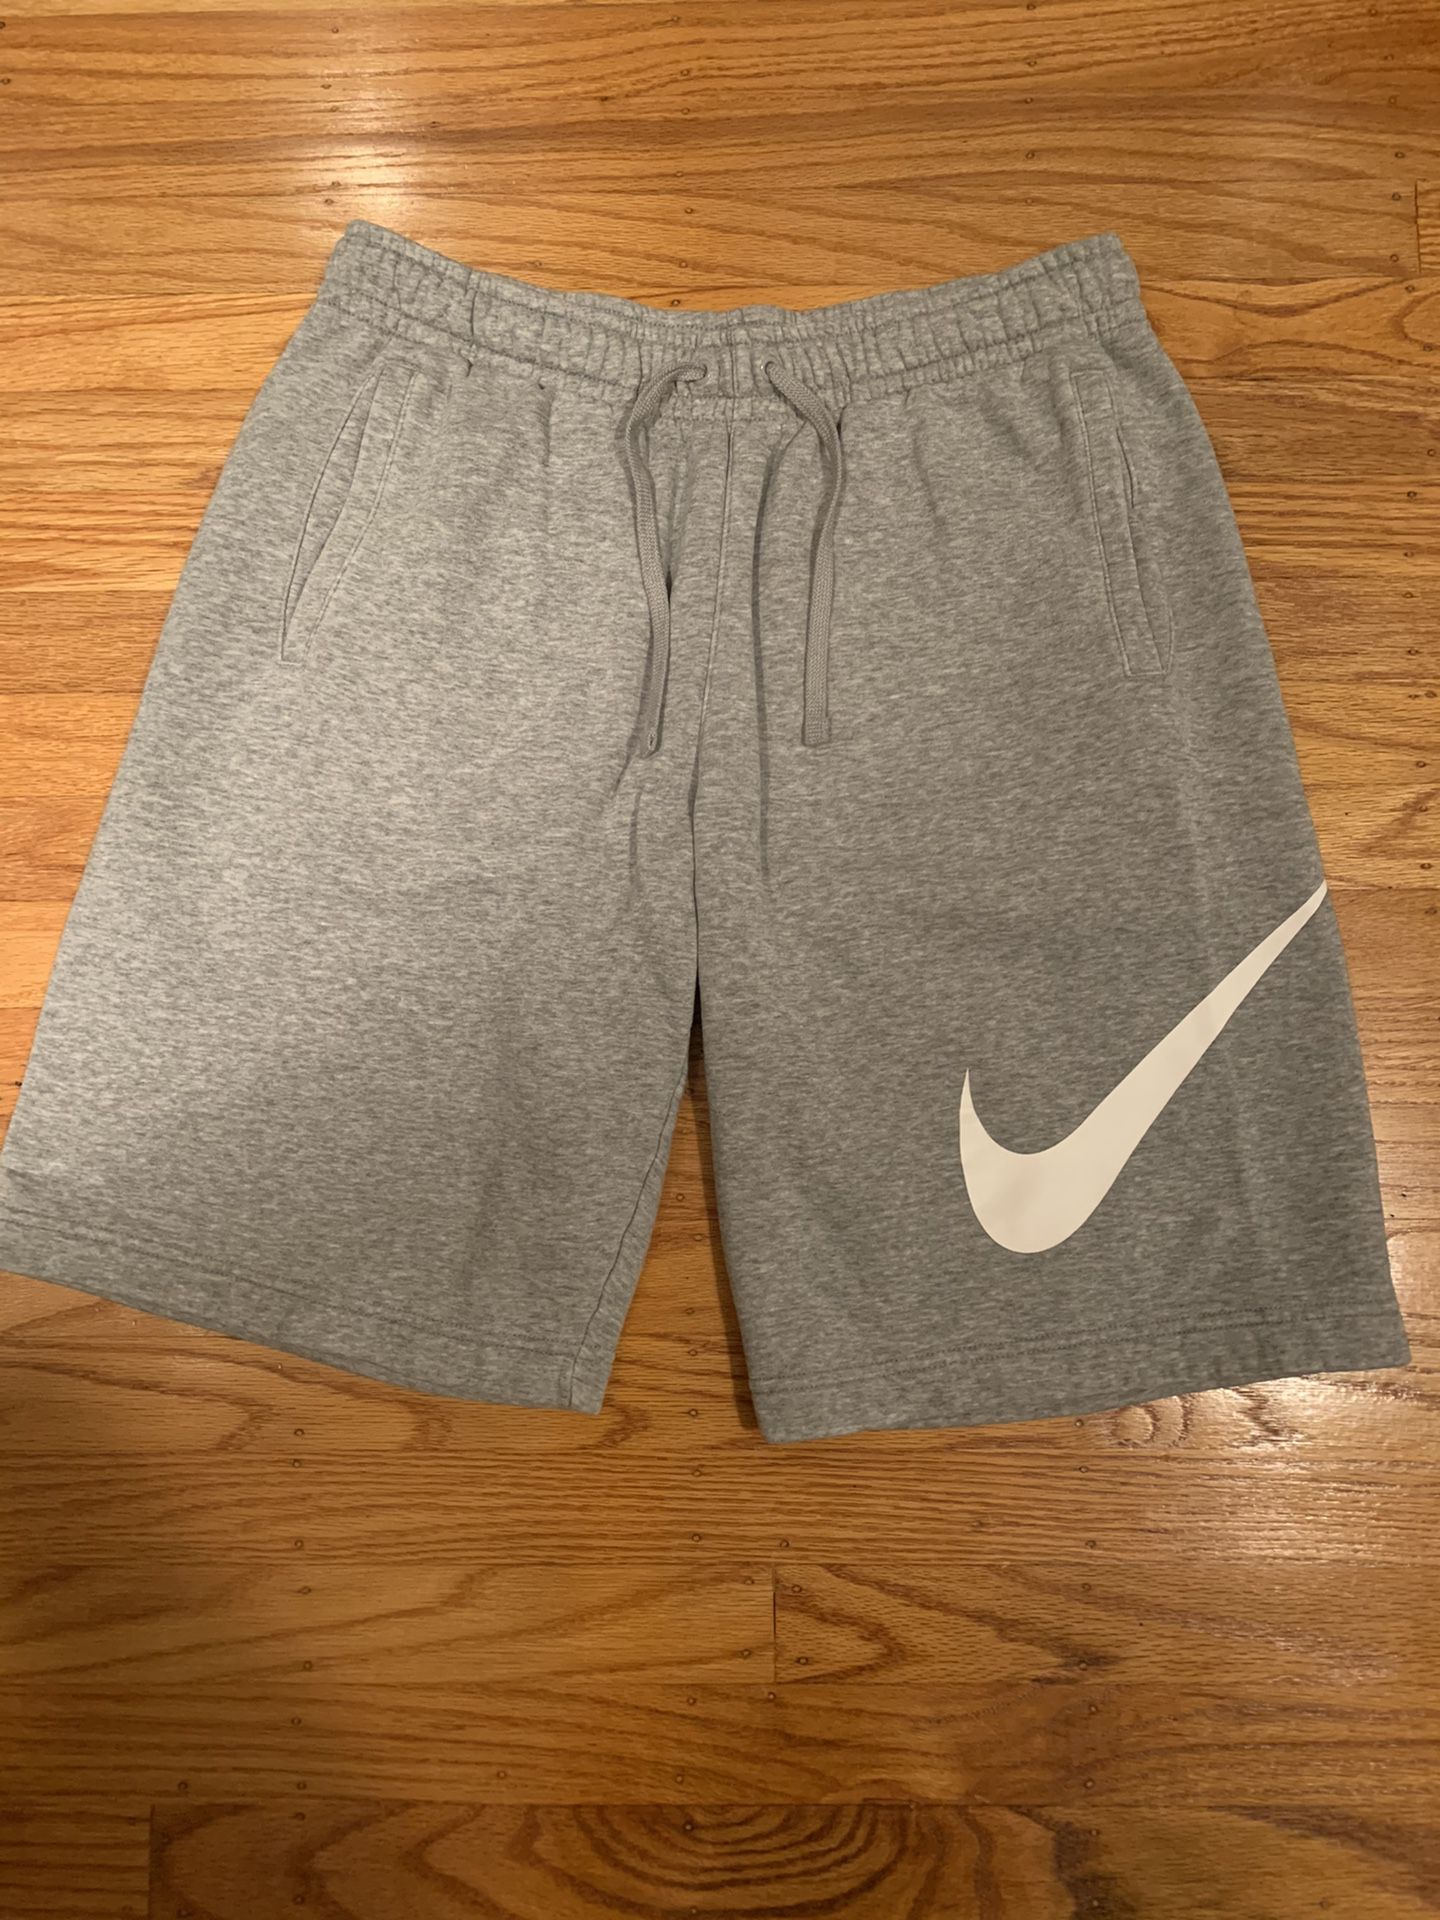 Nike grey club shorts